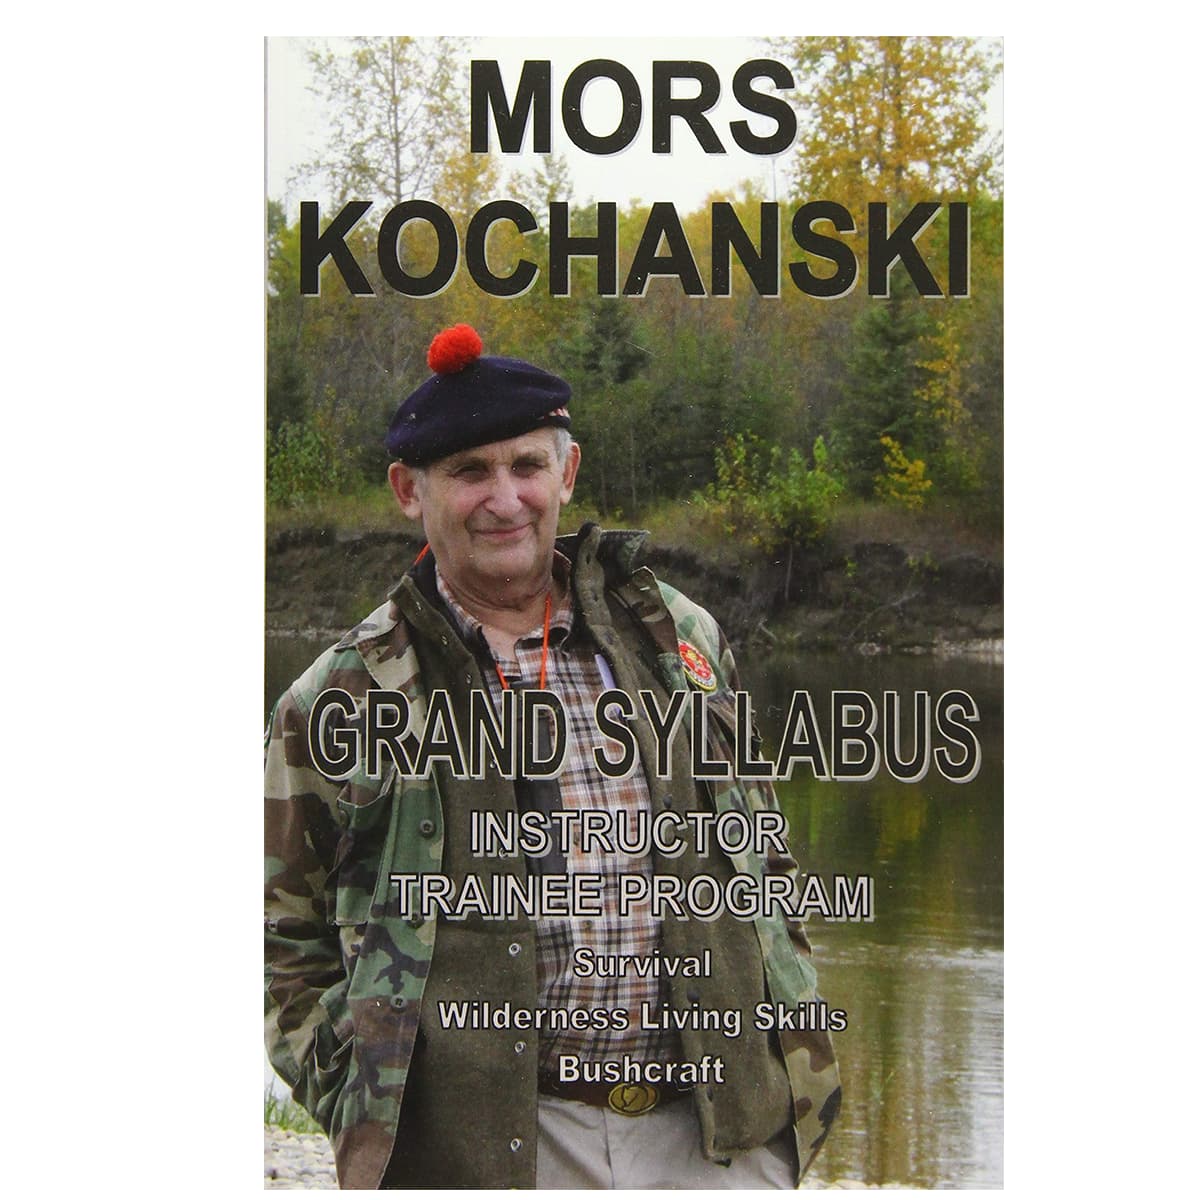 Mors Kochanski - The Grand Syllabus